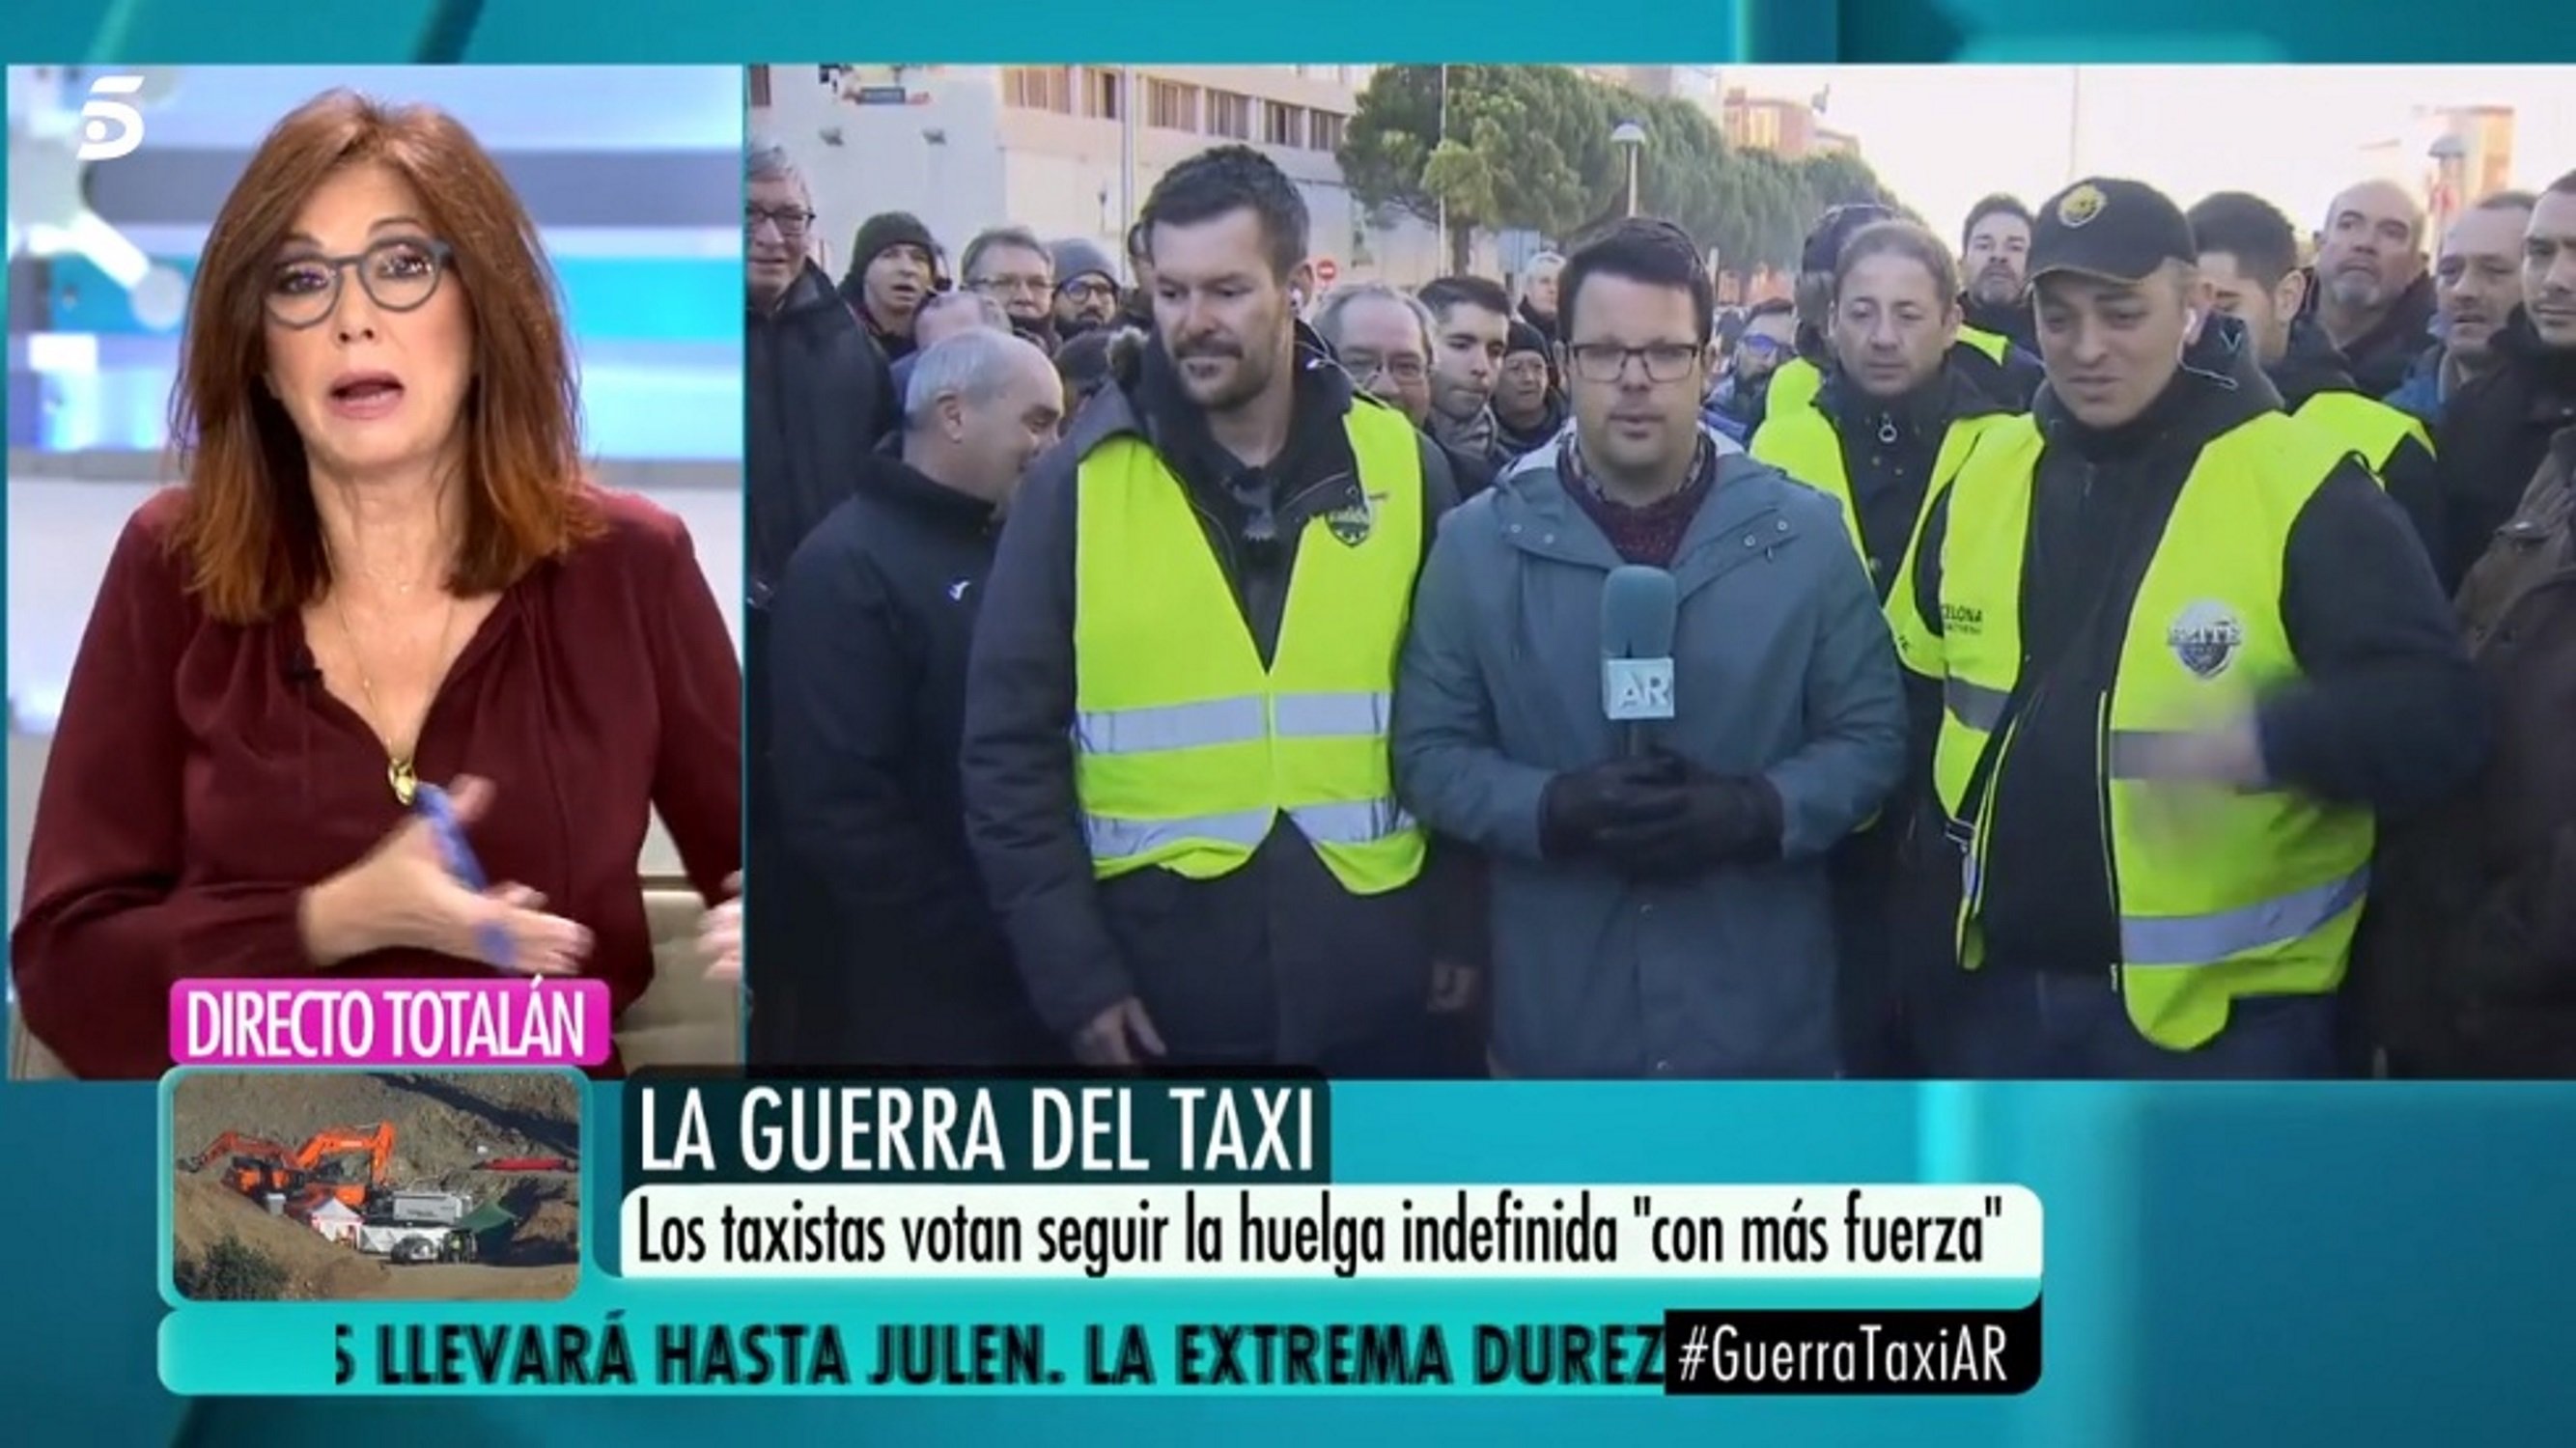 El repaso del portavoz de los taxis a Ana Rosa: "Zasca tras zasca"